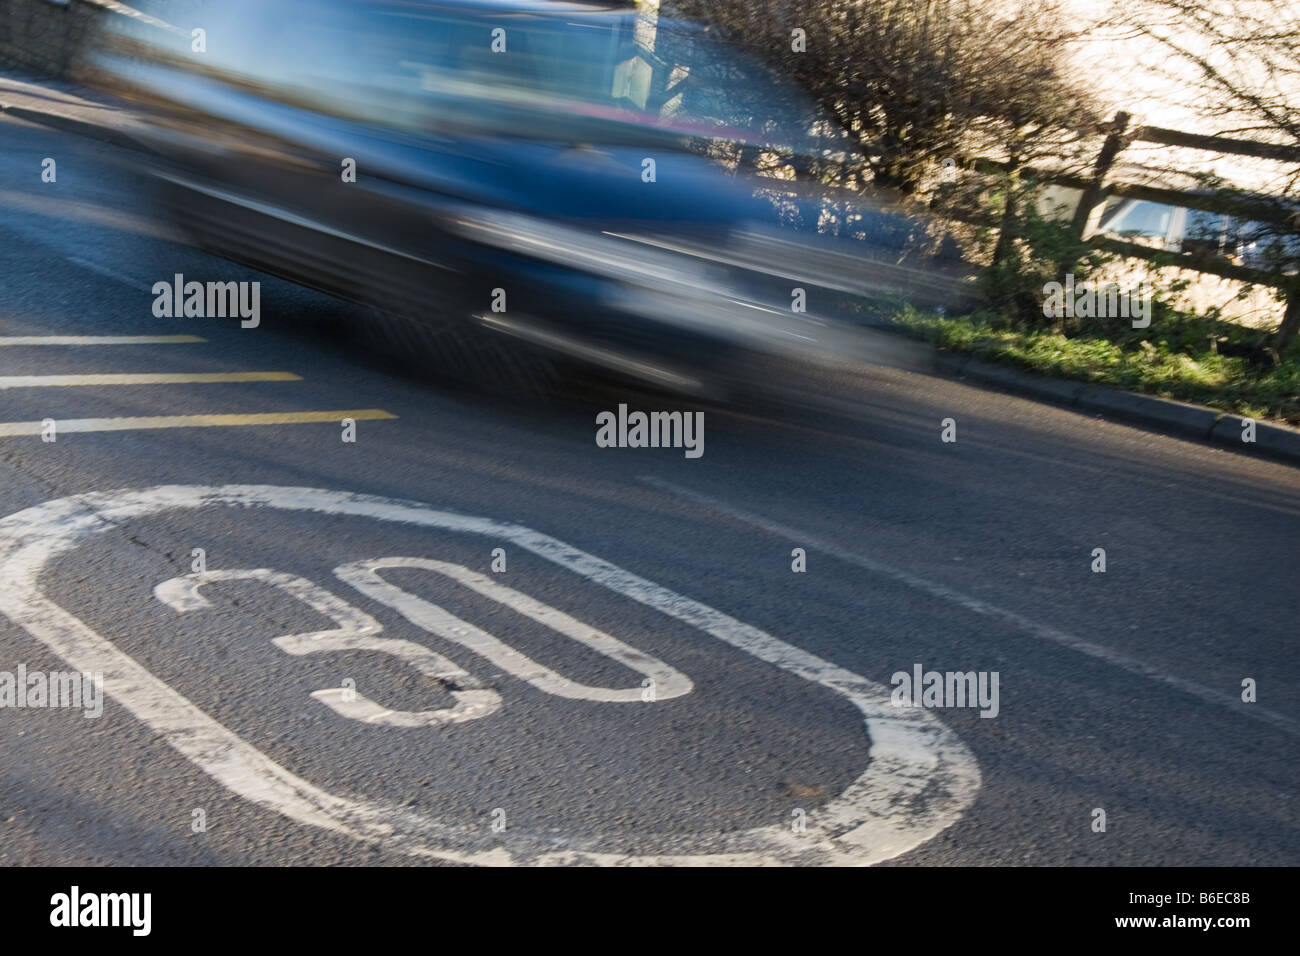 Une voiture dans le motion blur en passant à 30 milles à l'heure limite de vitesse britannique situé dans le road sign Banque D'Images